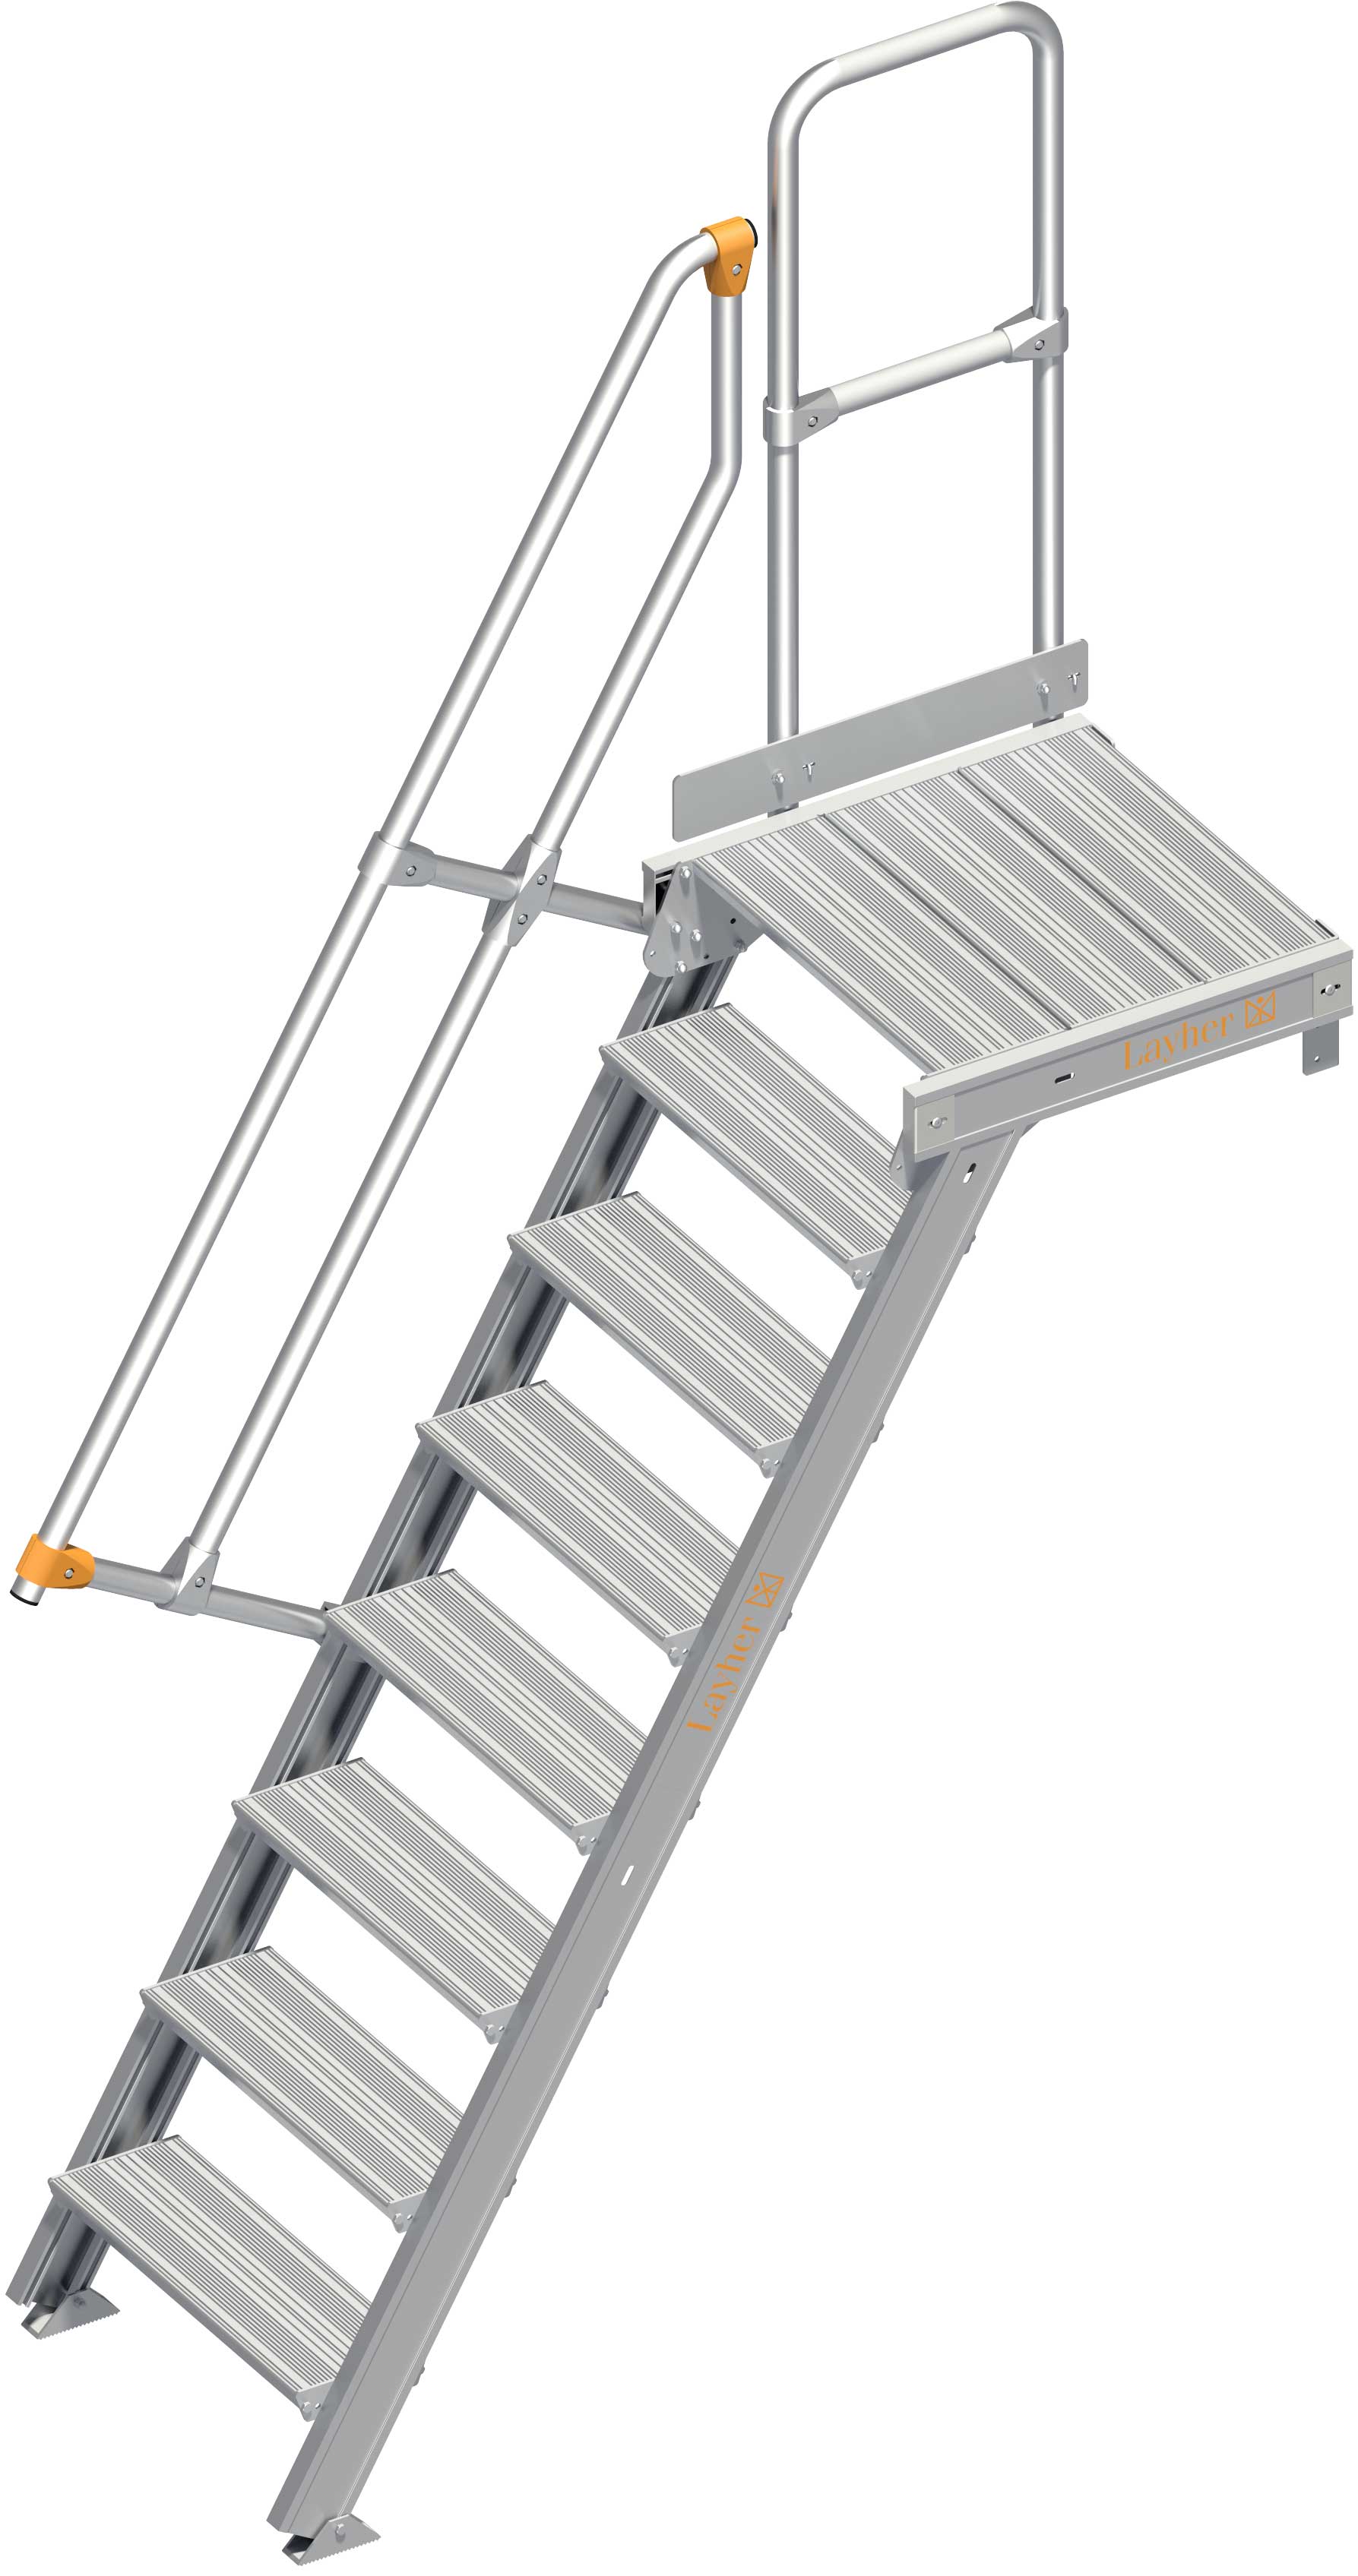 Layher Plattformtreppe 60° SG 8 Stufen - 600 mm breit